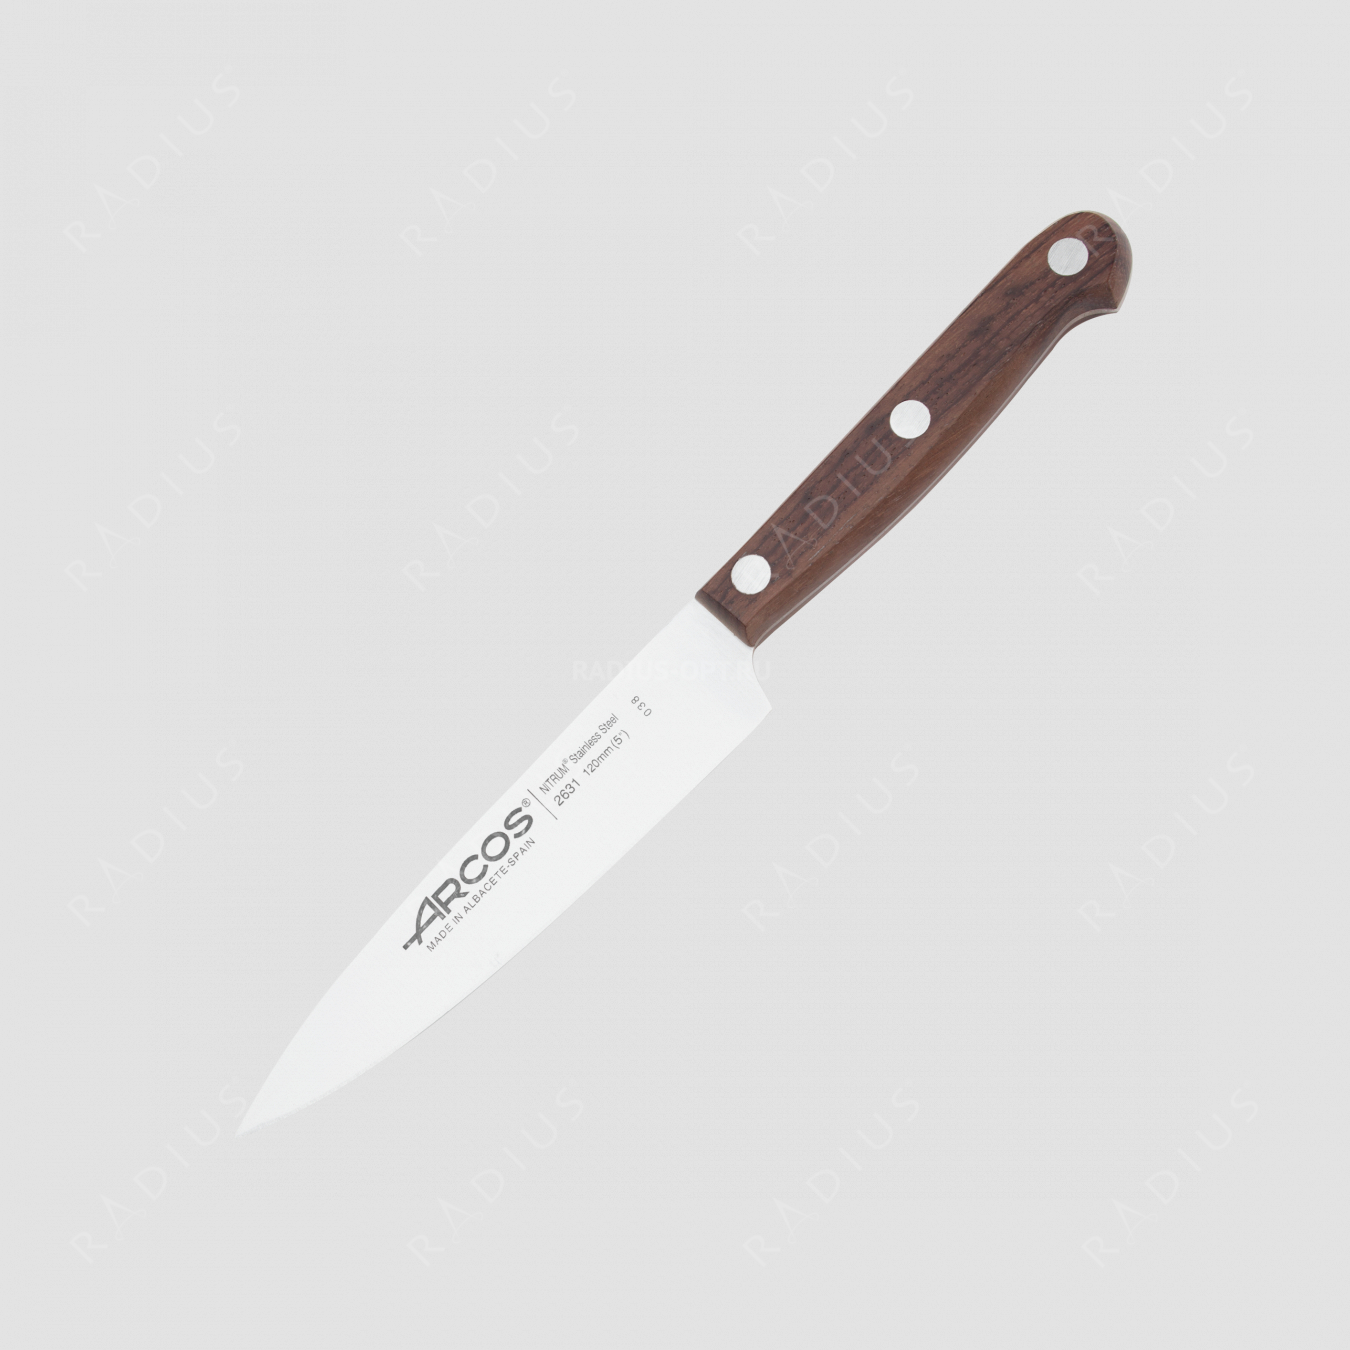 Нож кухонный поварской 12 см, серия Atlantico, ARCOS, Испания